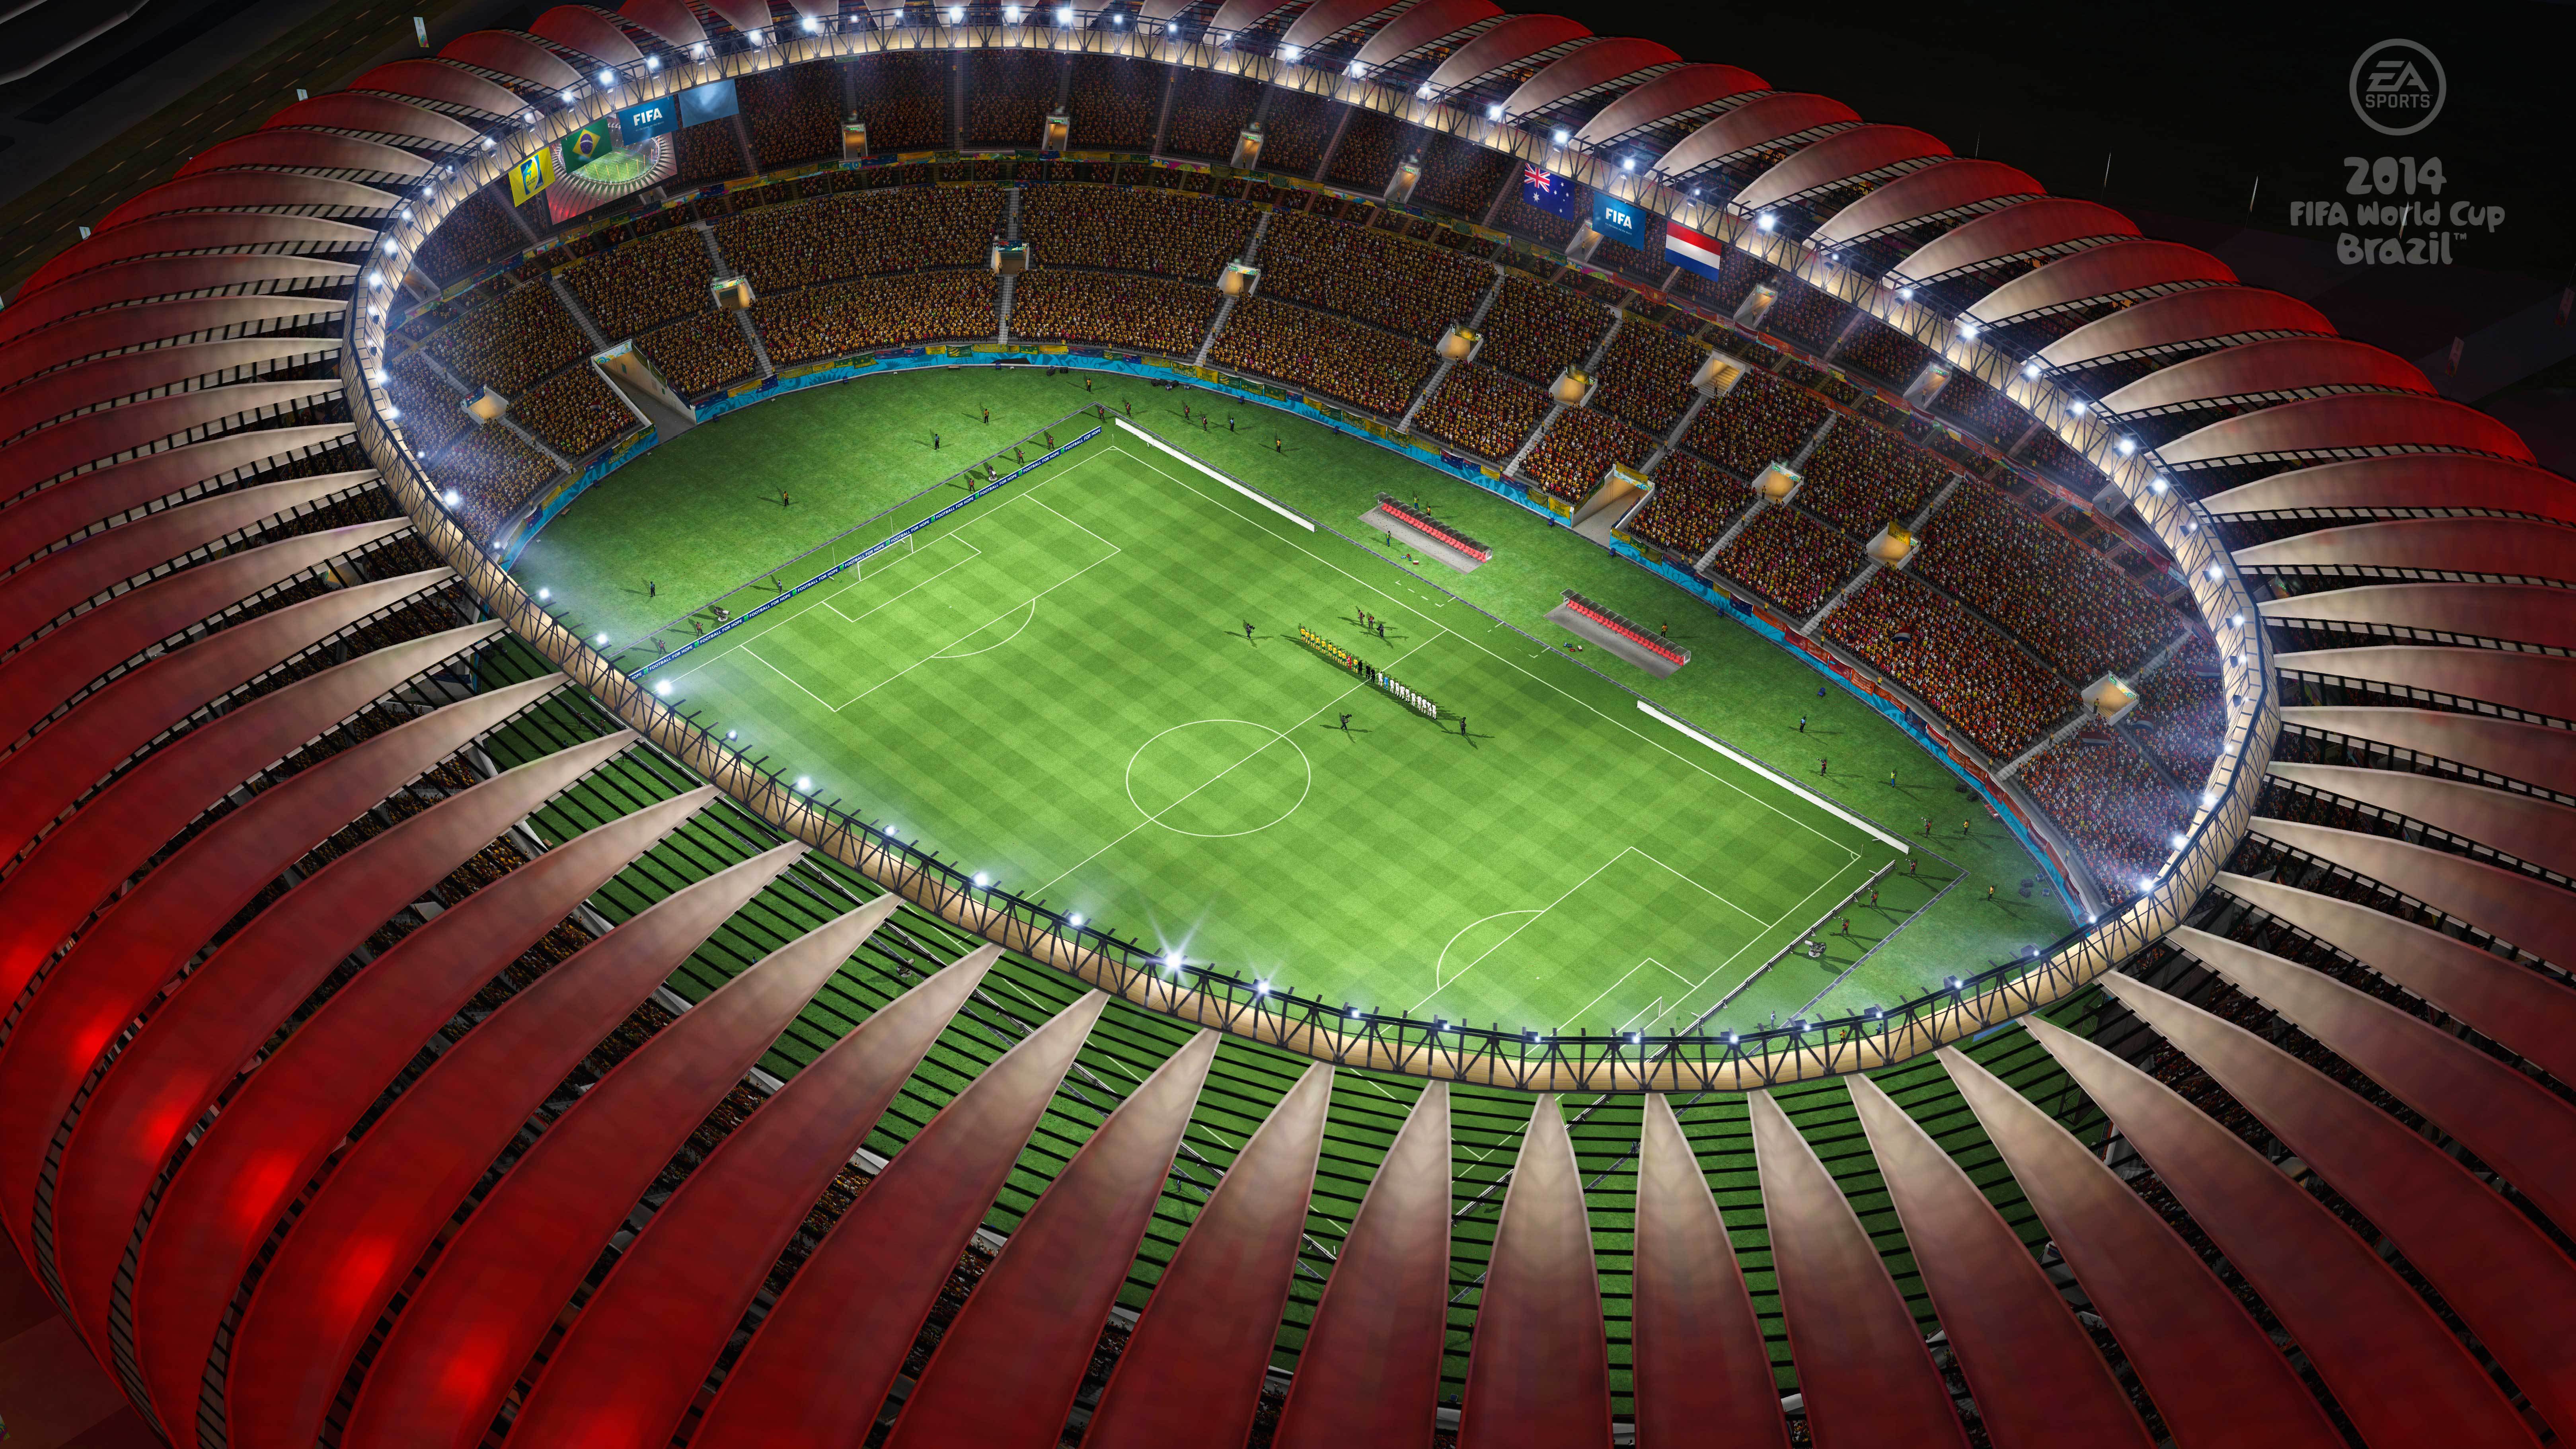 Игра футбол стадион. Арена Бейра Рио. Футбольный стадион Бразилии. Футбольный стадион Бразилия 2022. 2014 FIFA World Cup Brazil.